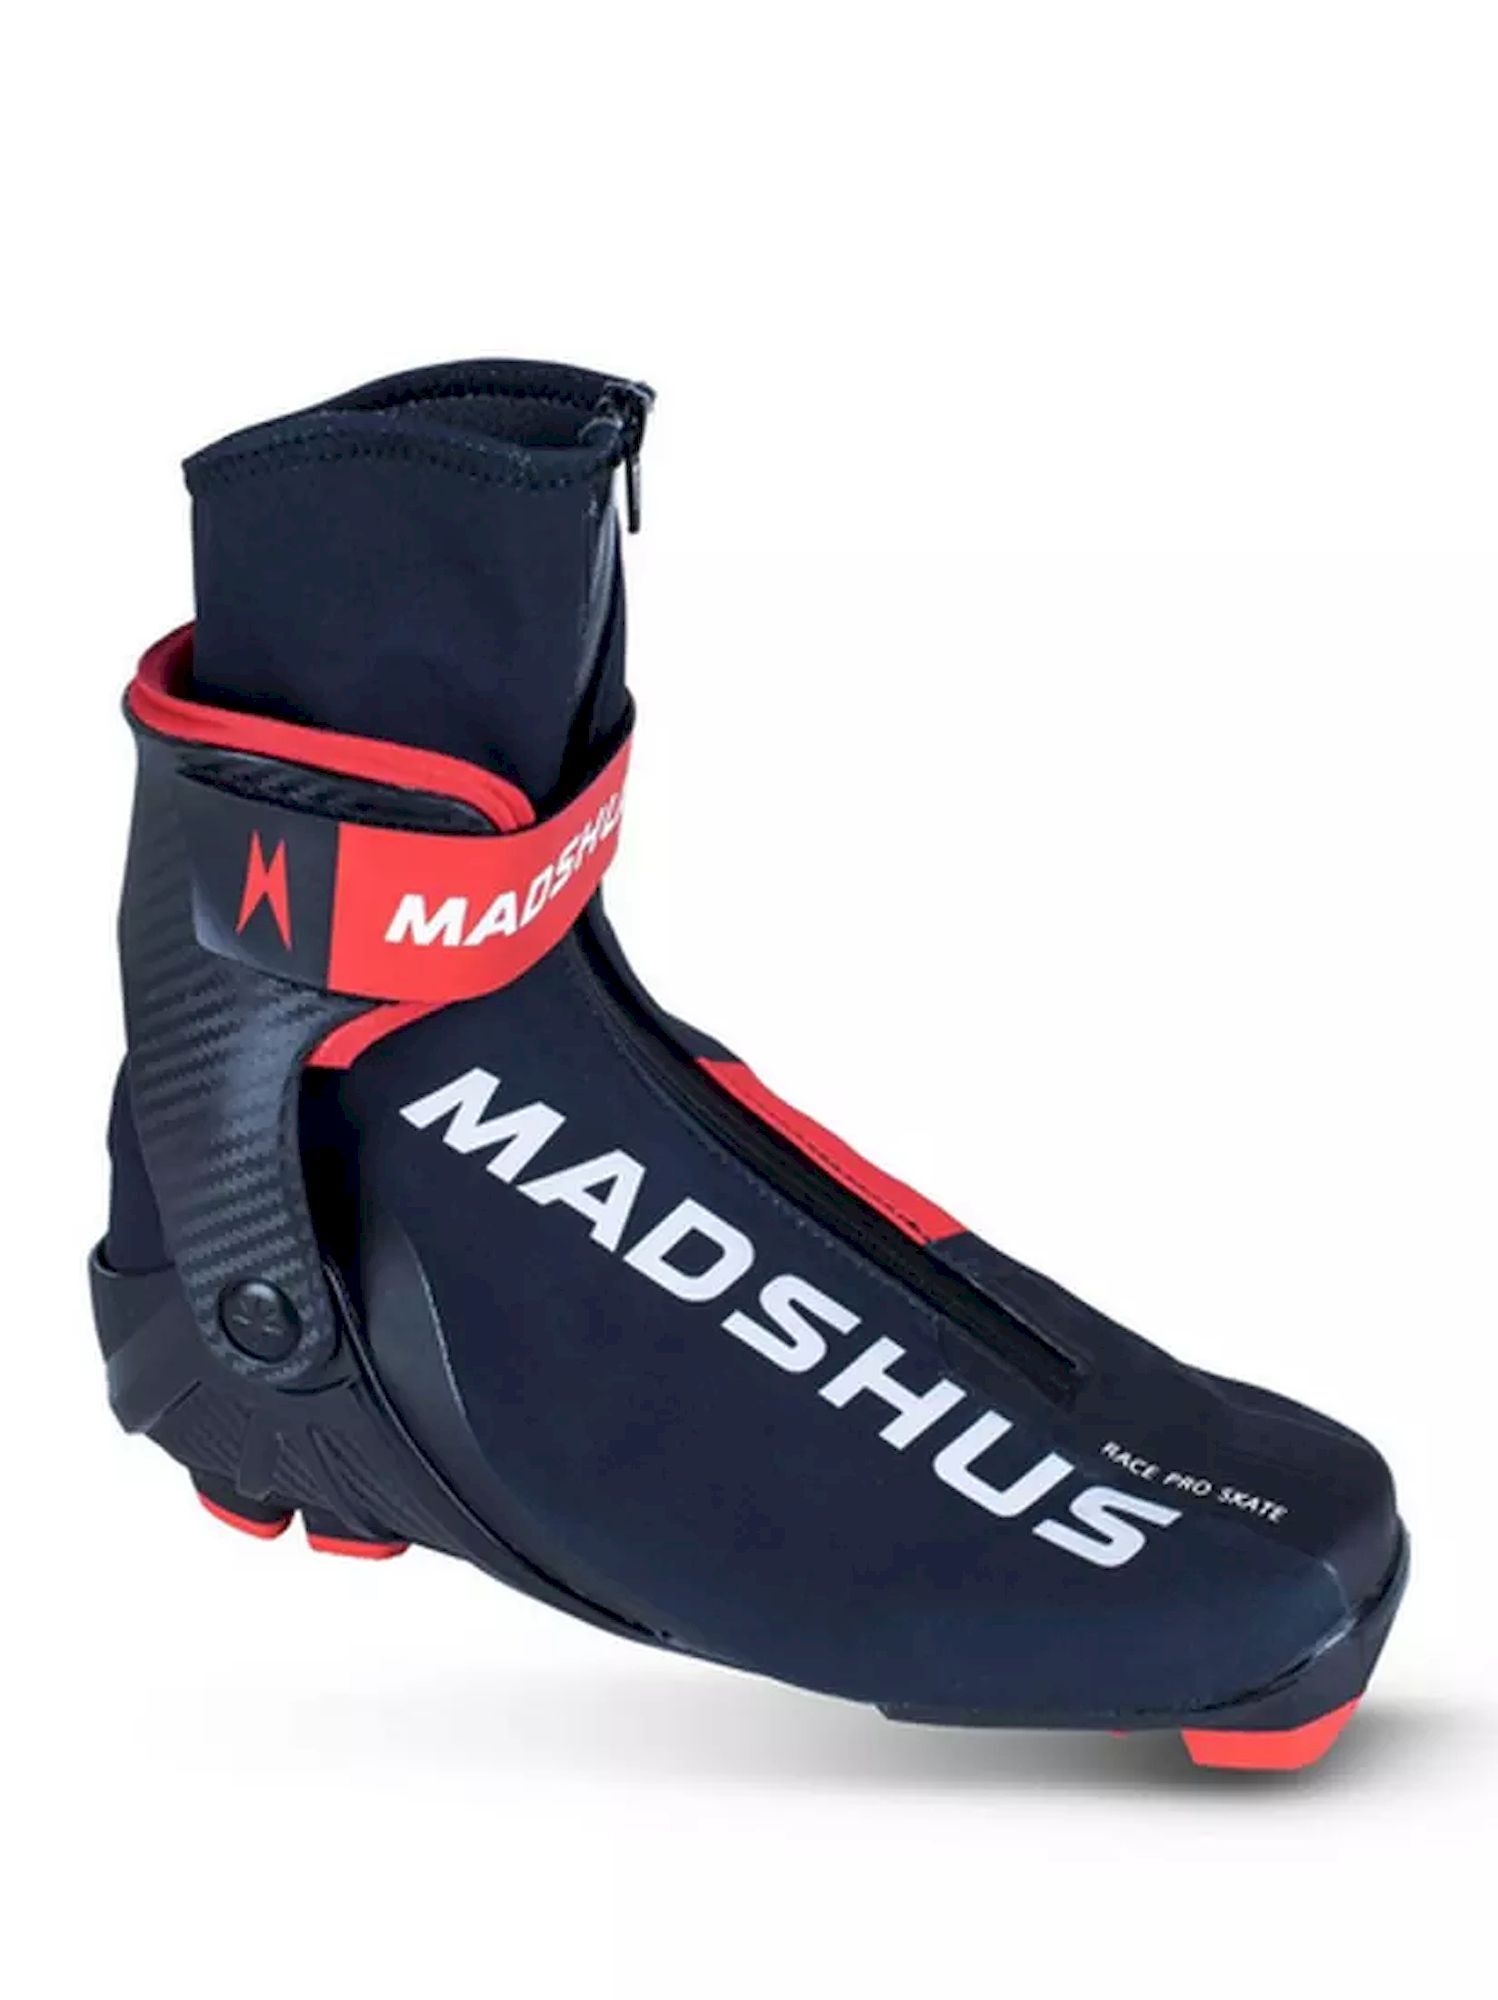 Madshus Race Pro Skate - Hiihtokengät | Hardloop